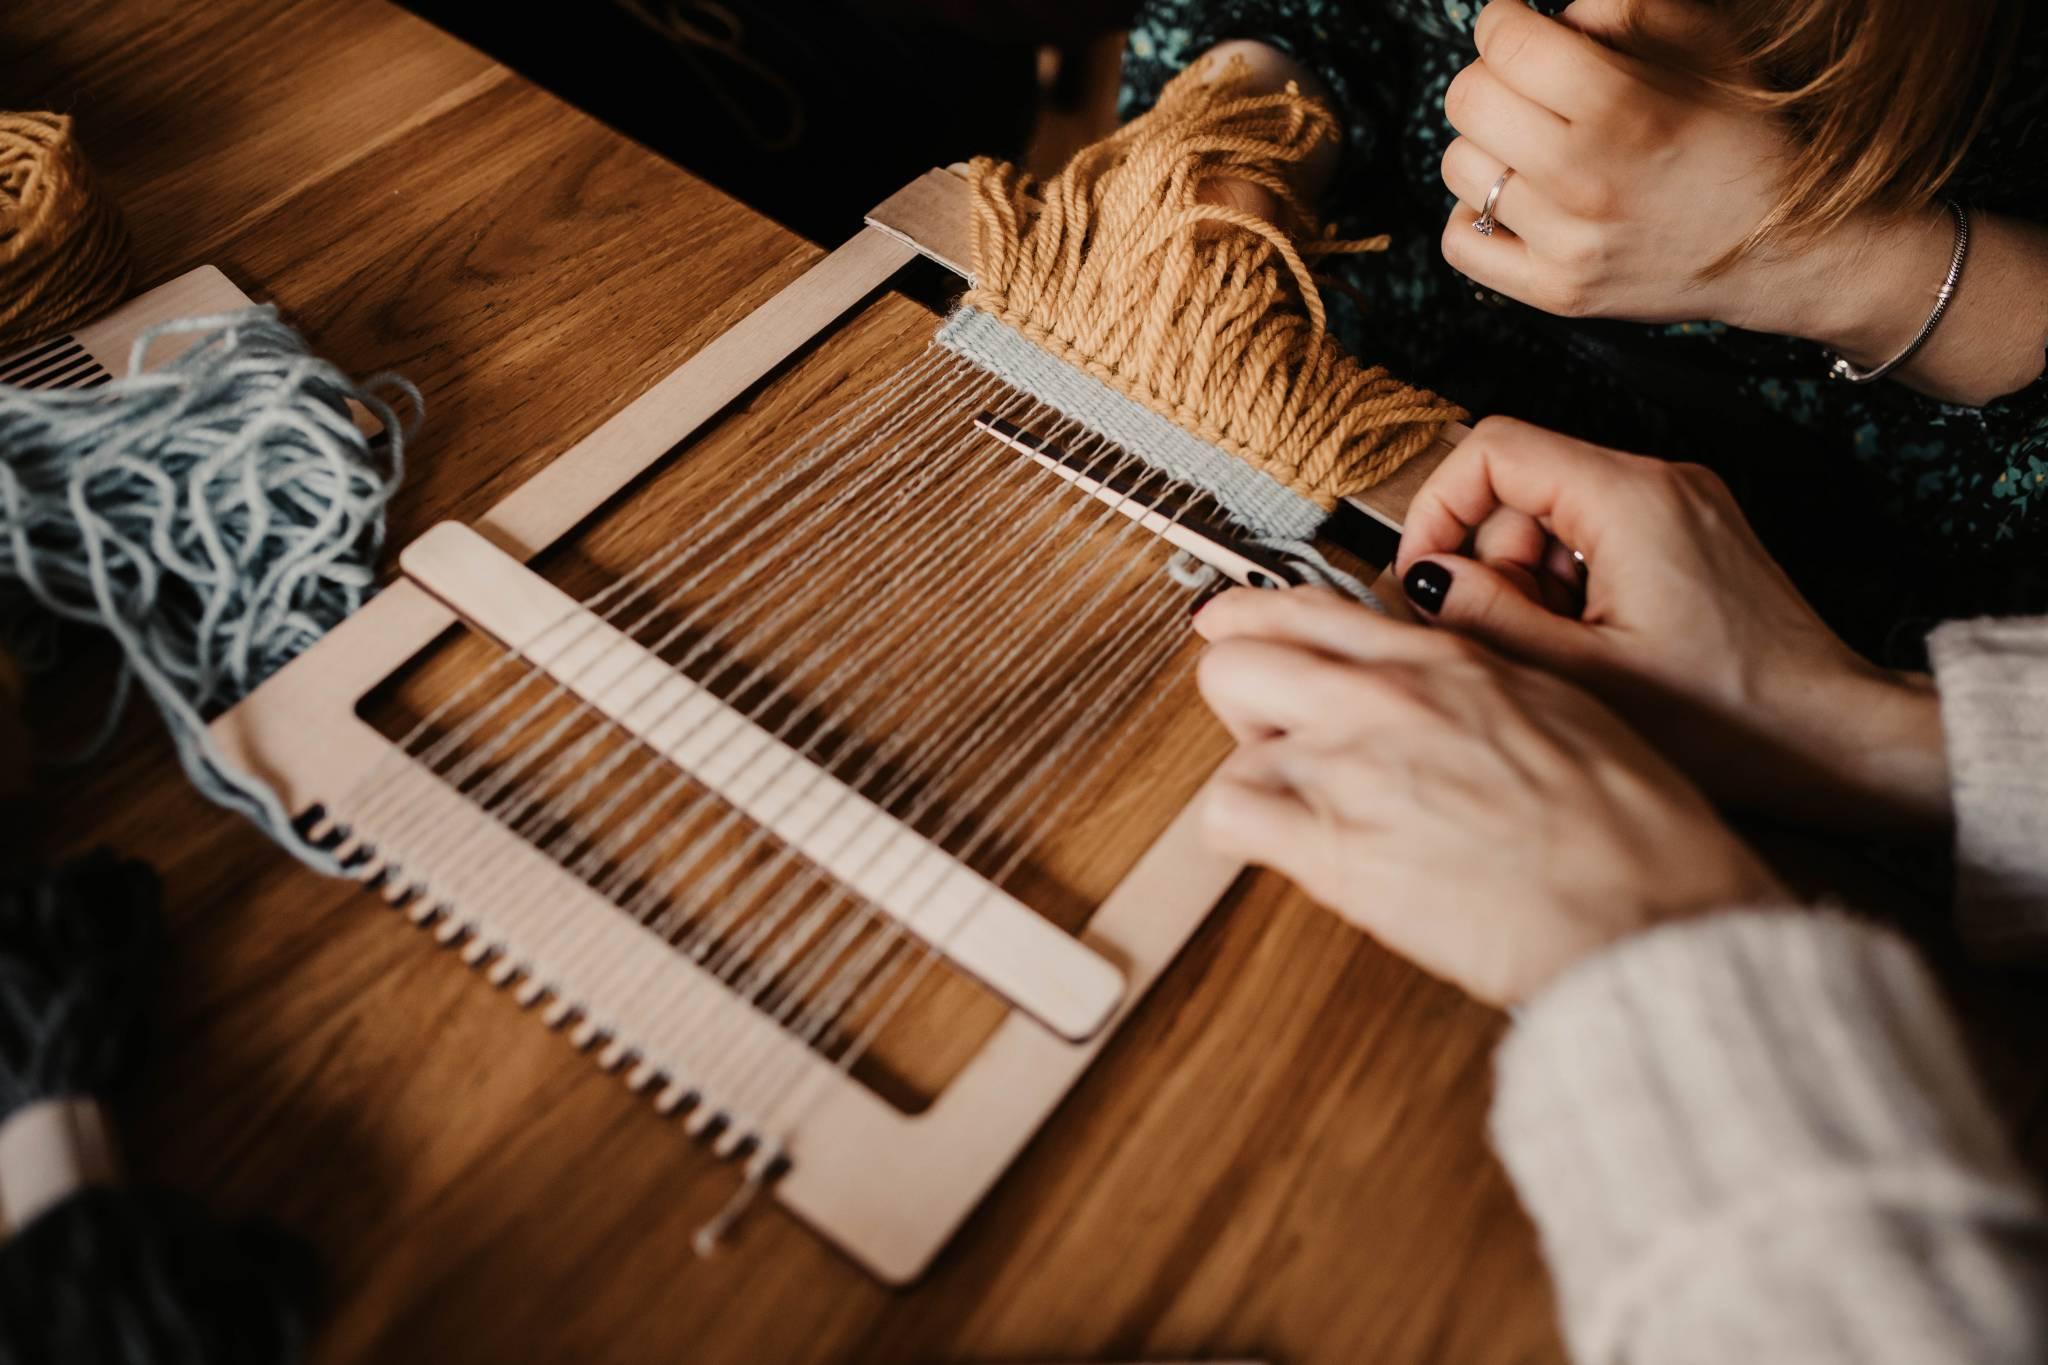  Robótki ręczne, czyli robienie na drutach, szydełkowanie, tkanie – przeżywają ostatnio renesans. (Fot. Agnieszka Sopel)